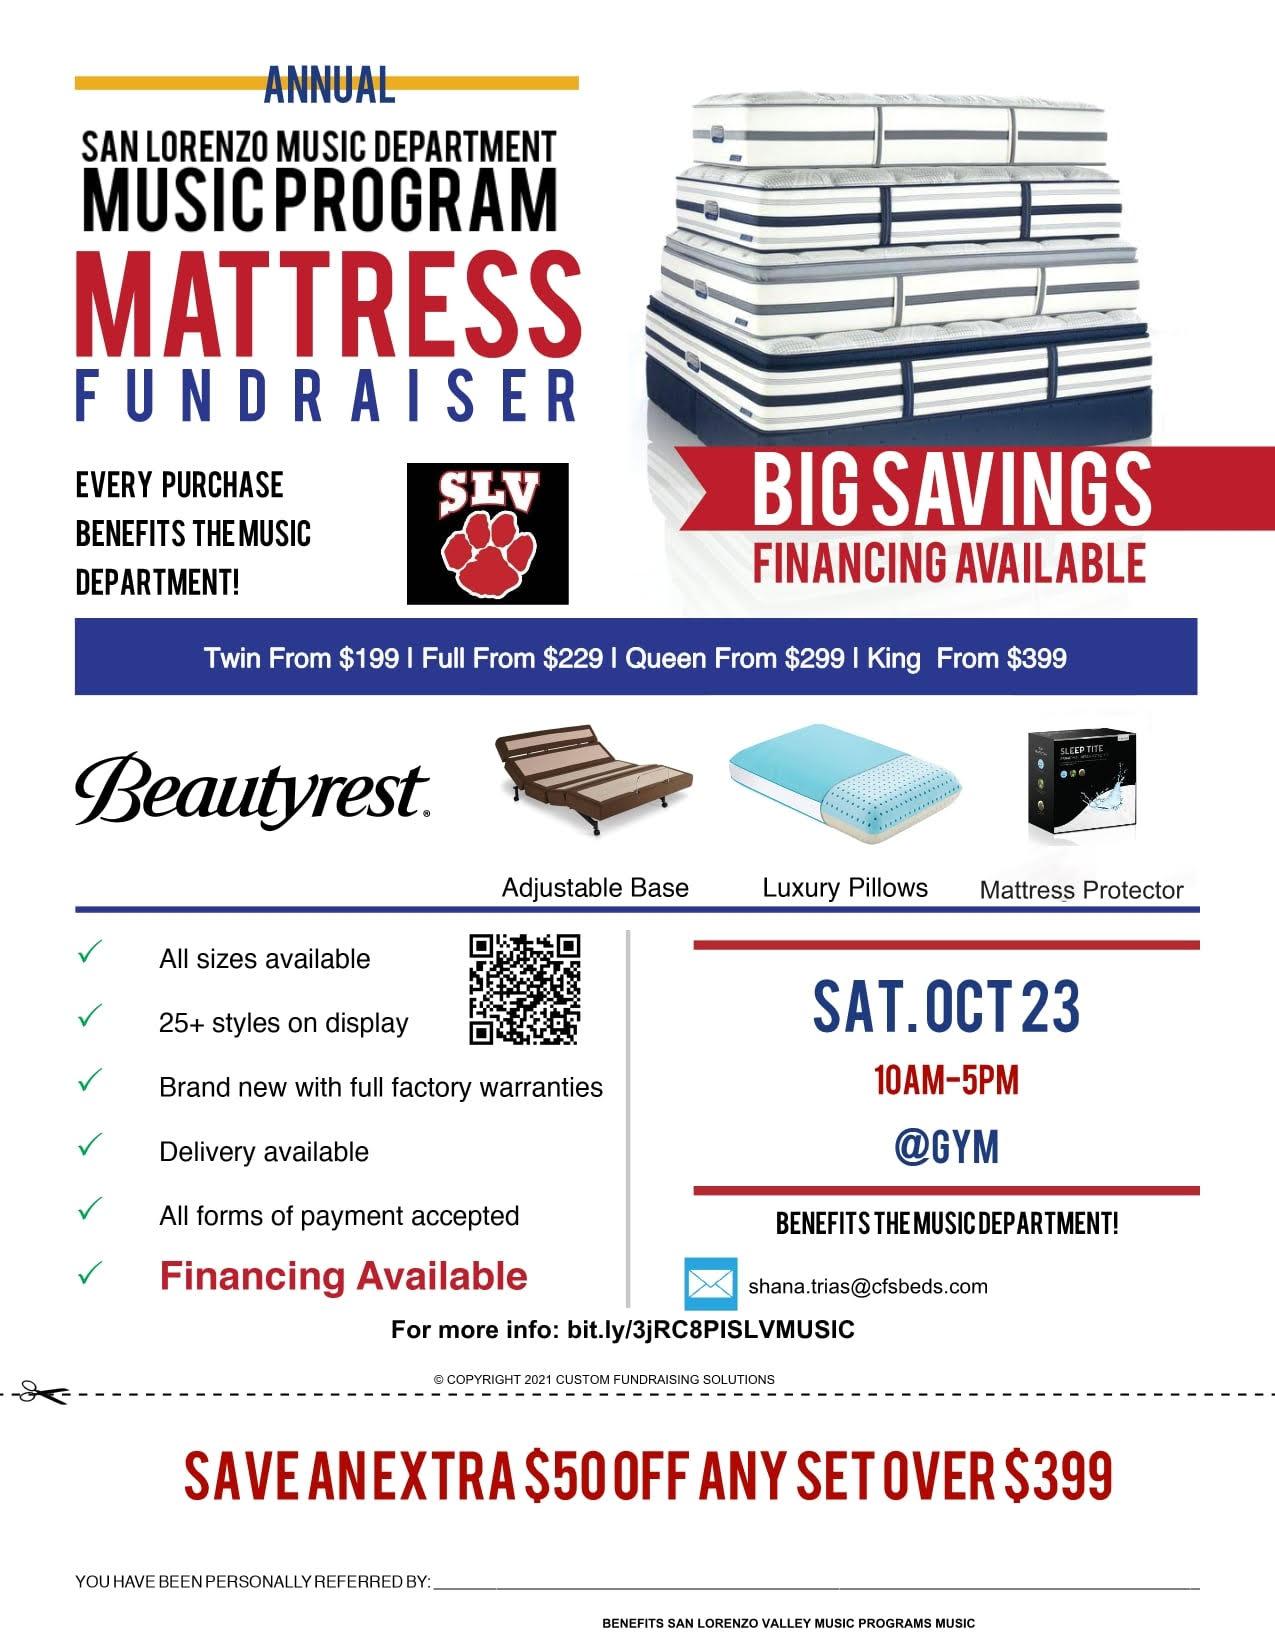 mattress fundraiser flyer